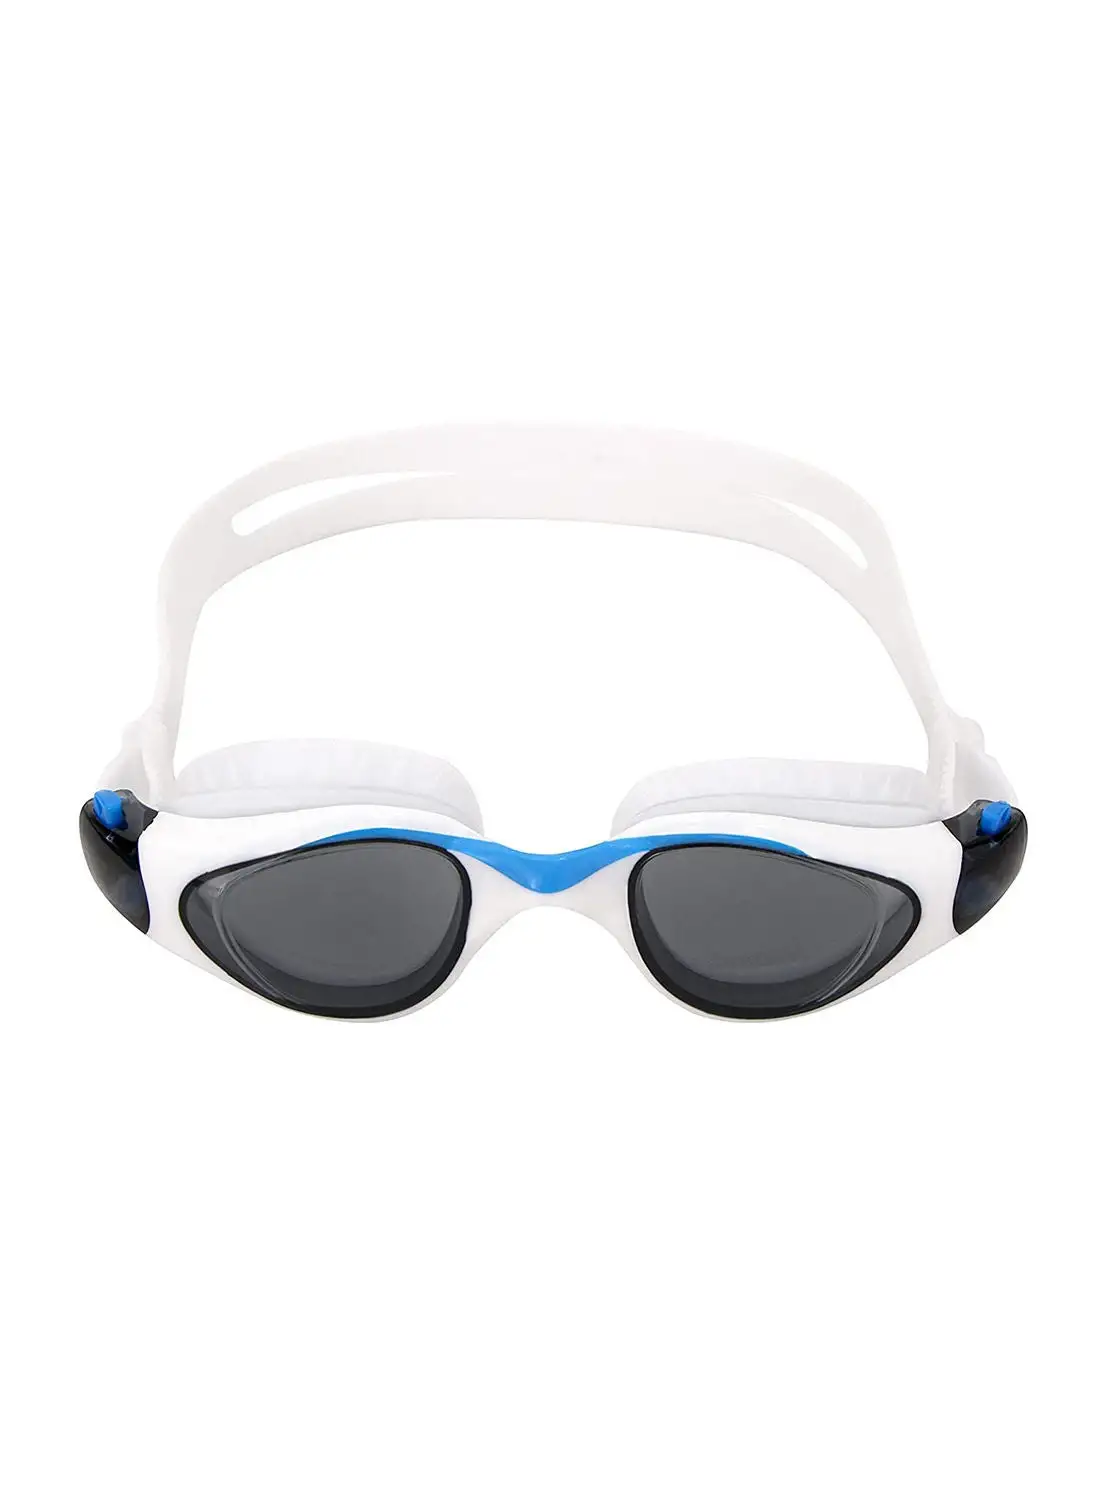 نظارات السباحة Nivia Unicore